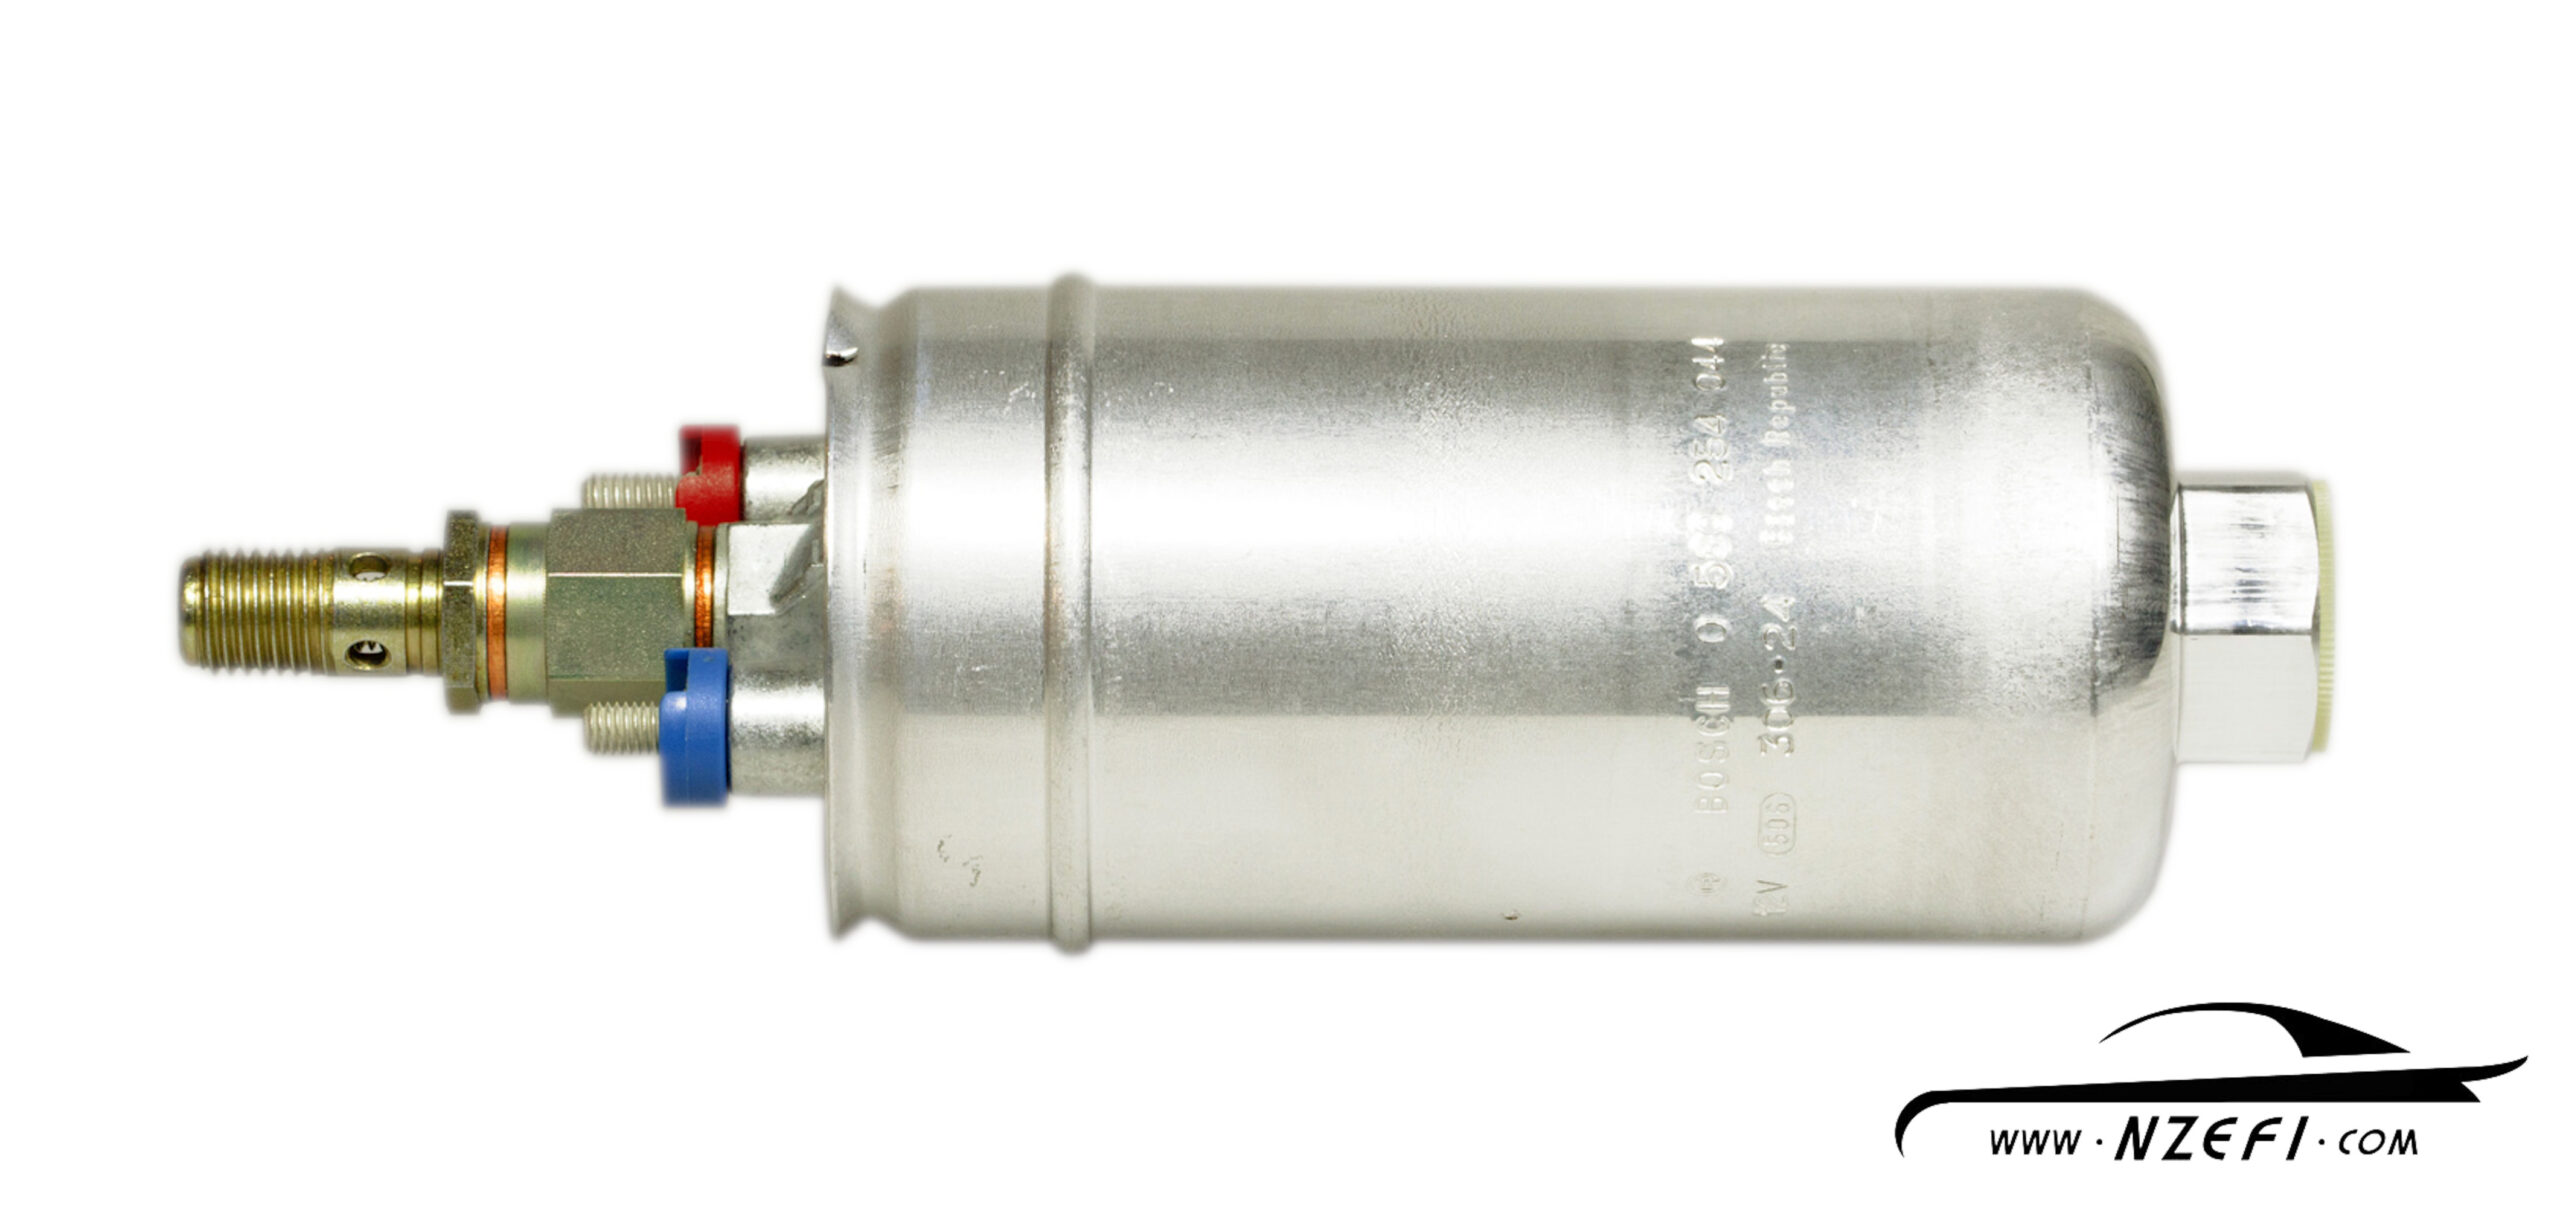 Bosch 0580 254 044 External High Performance Fuel Pump With AN-10 Adapters-BLACK 